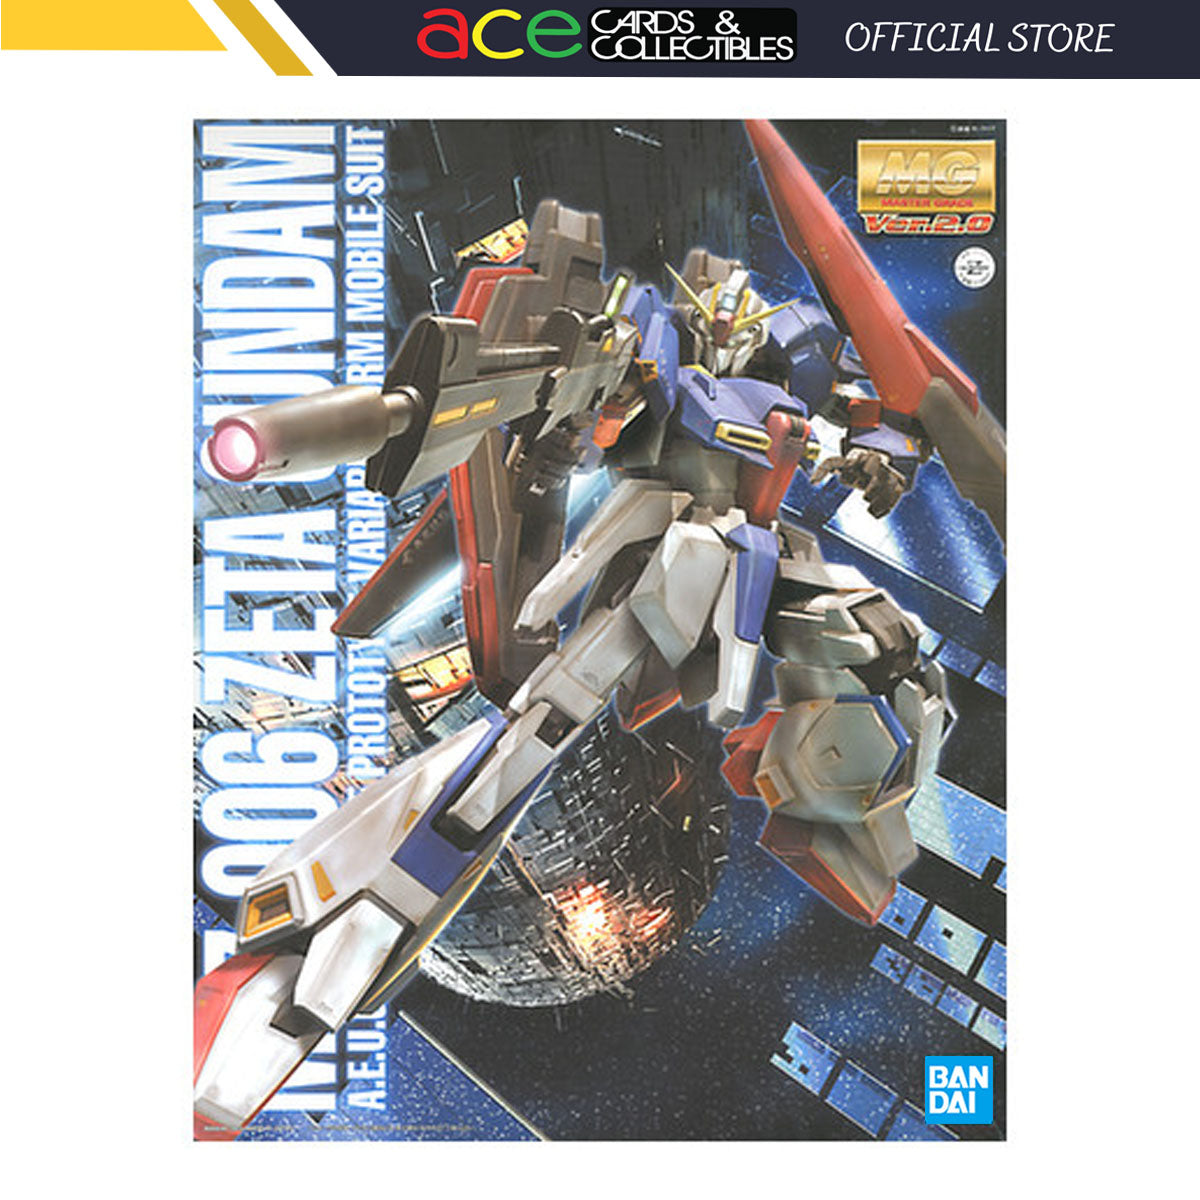 Gunpla 1/100 MG Zeta Gundam Ver. 2.0-Bandai-Ace Cards & Collectibles